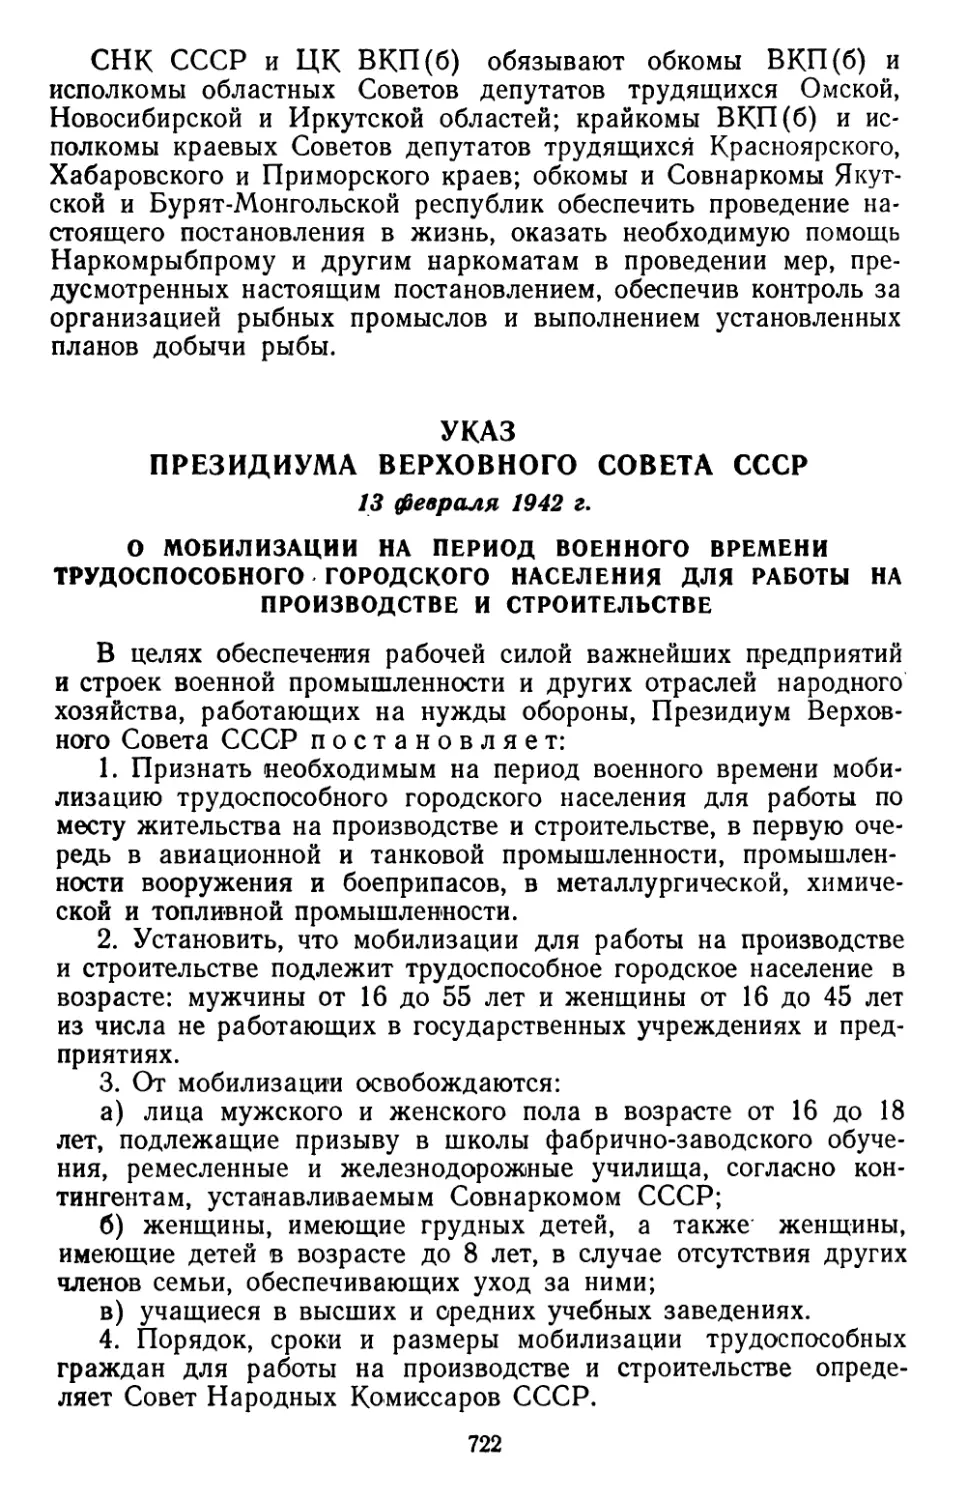 Указ Президиума Верховного Совета СССР, 13 февраля 1942 г. О мобилизации на период военного времени трудоспособного городского населения для работы на производстве и строительстве